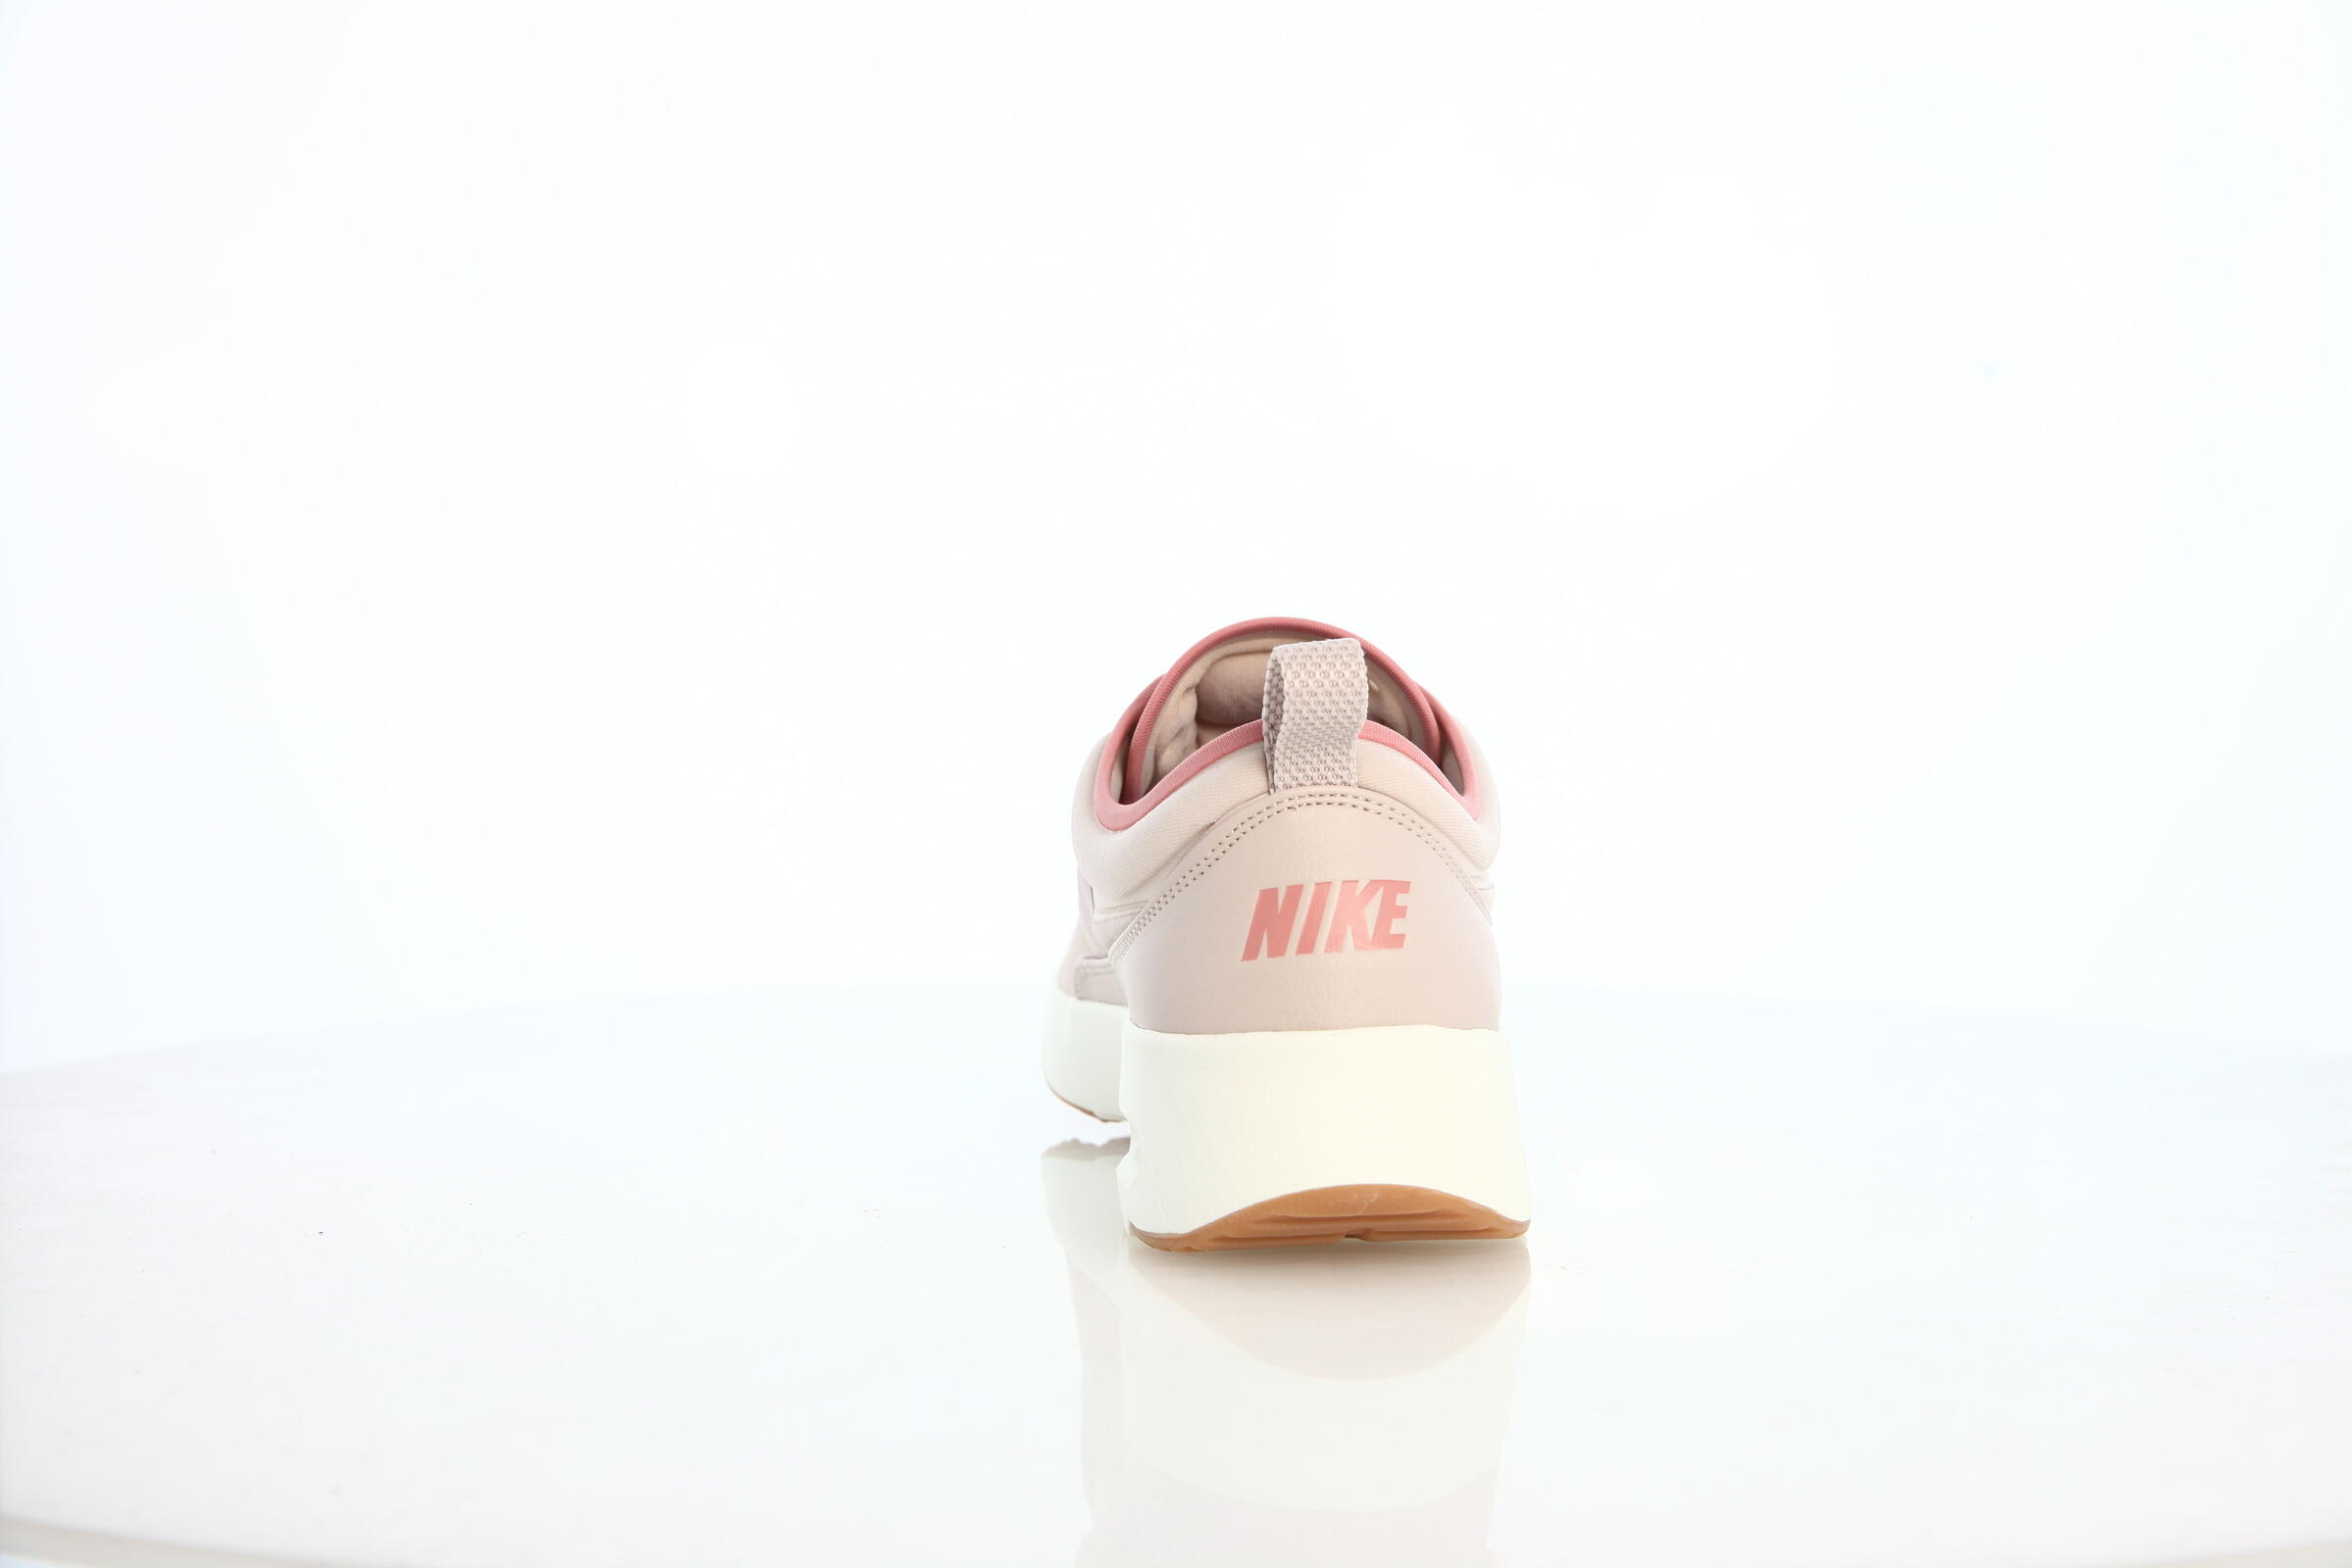 Nike Wmns Air Max Thea Ultra Premium "Silt Red"